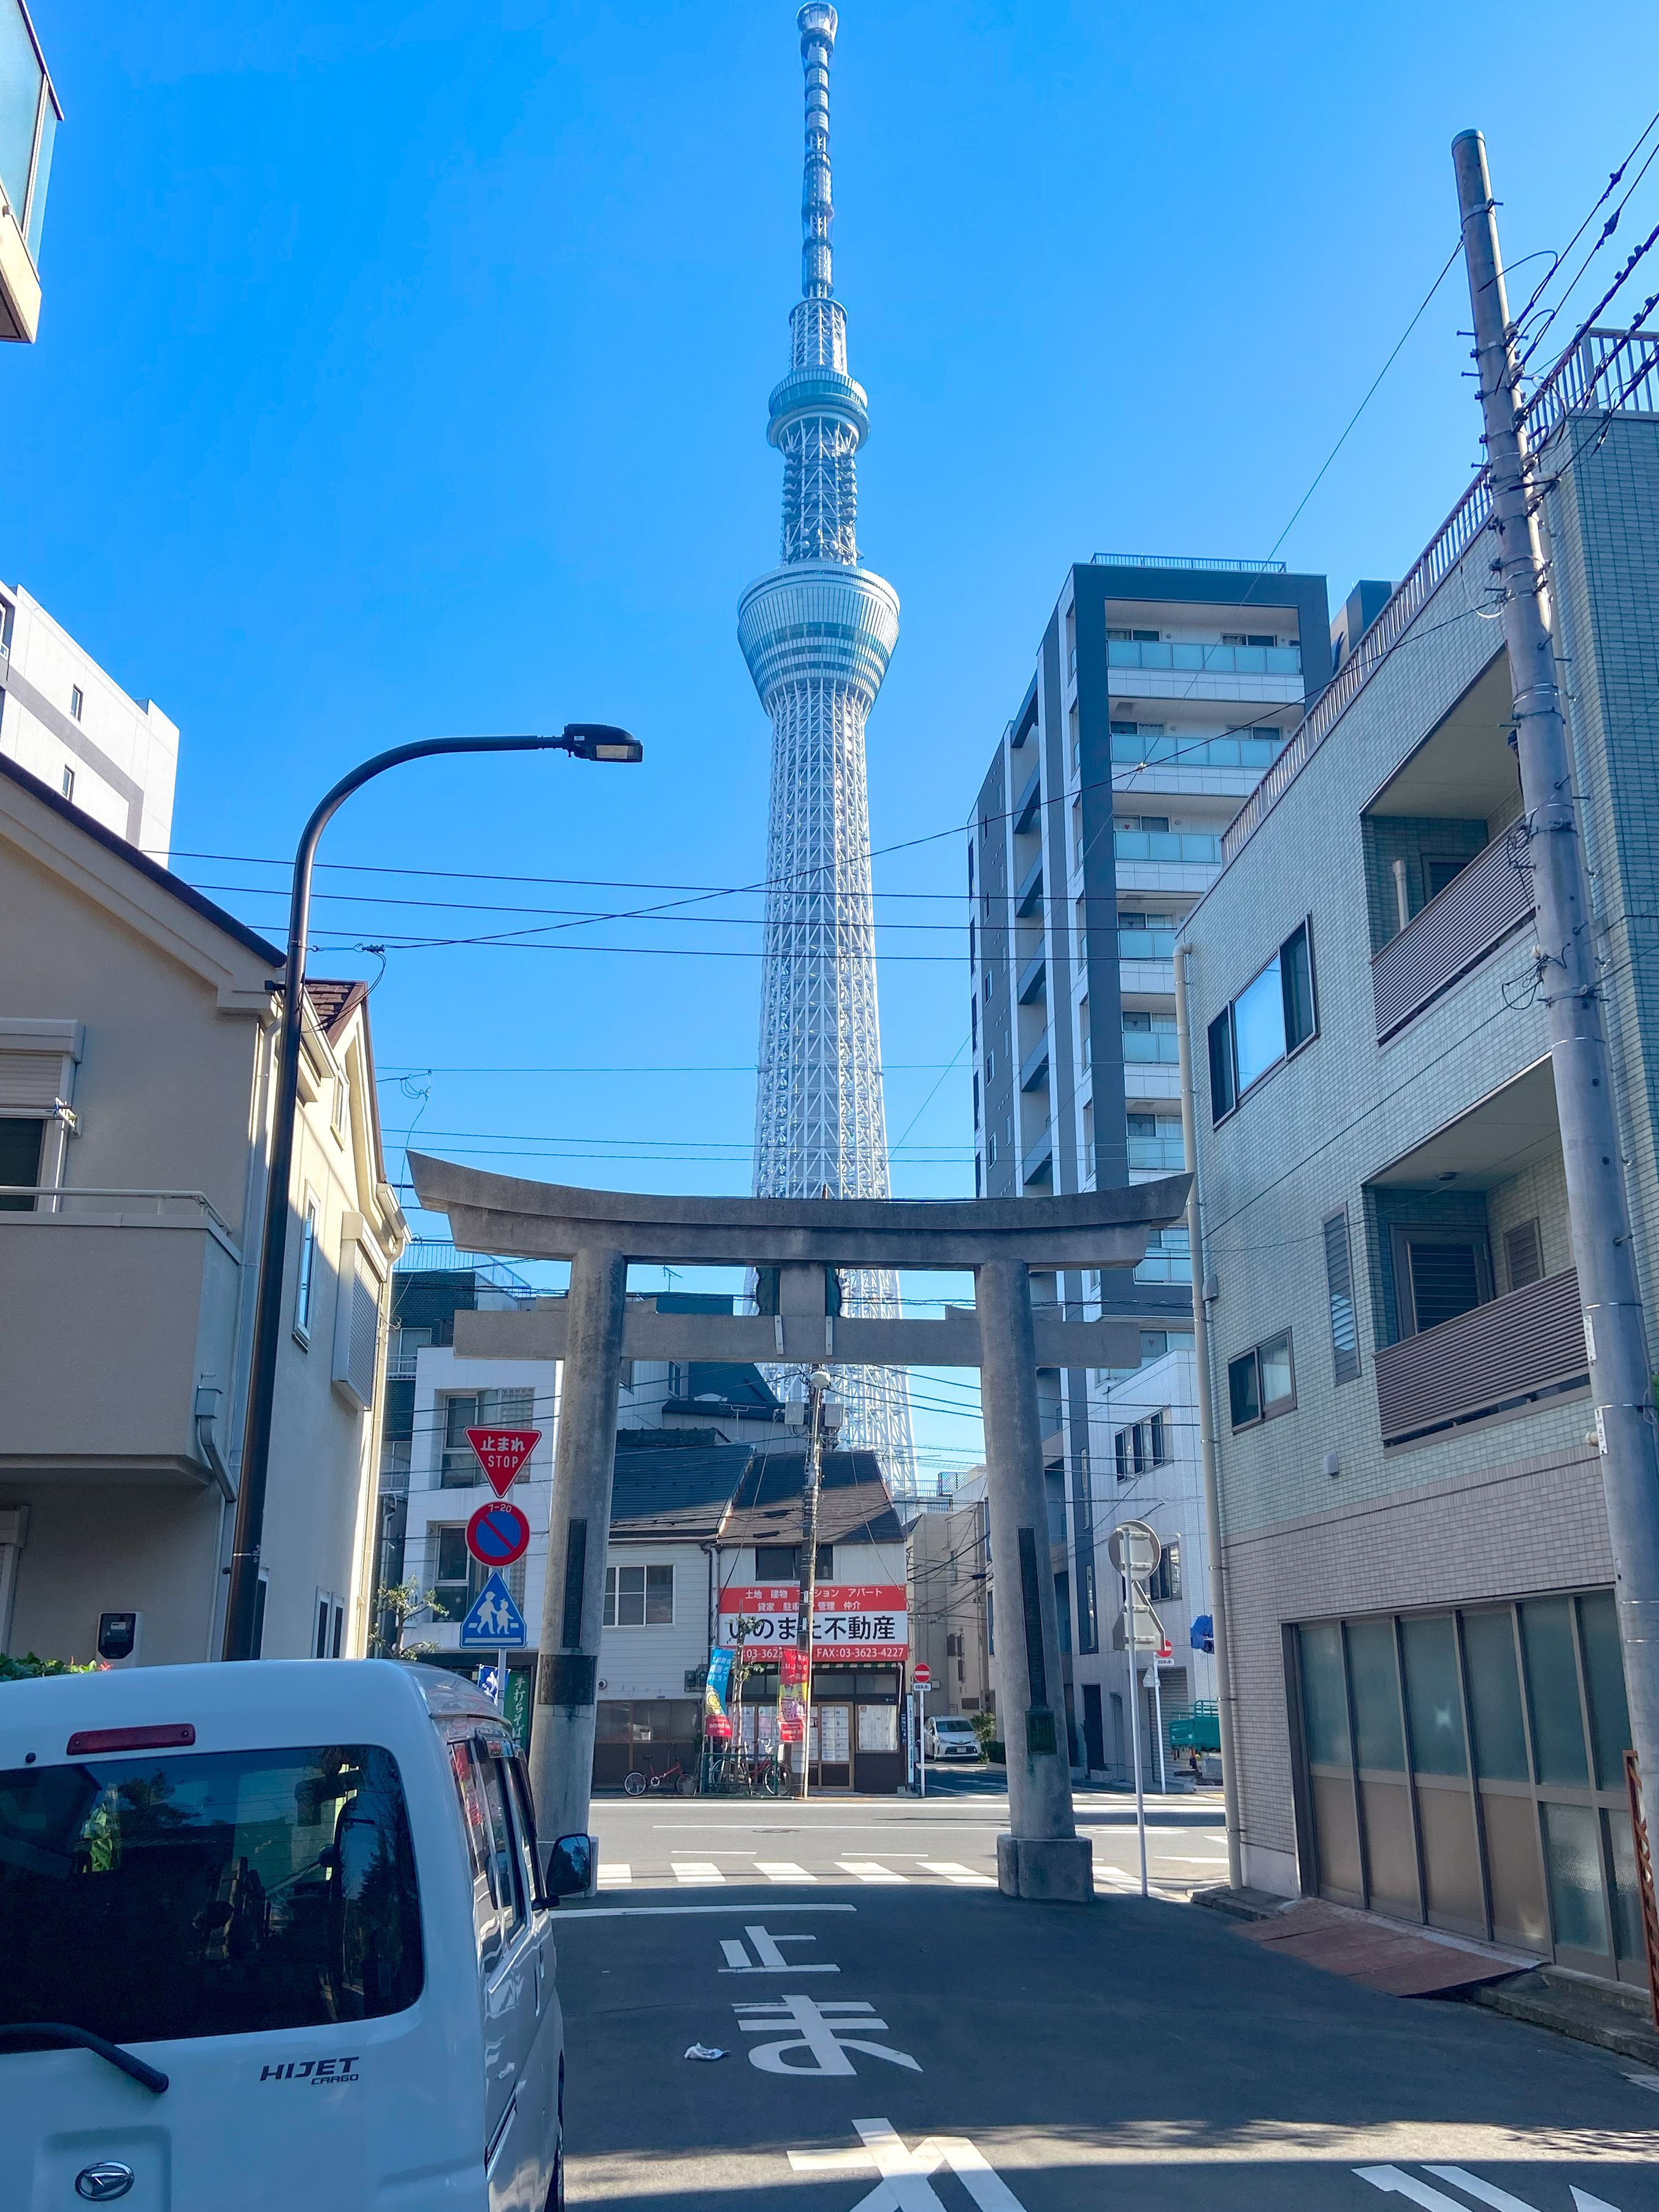 Tokyo Skytree next to a torii gate